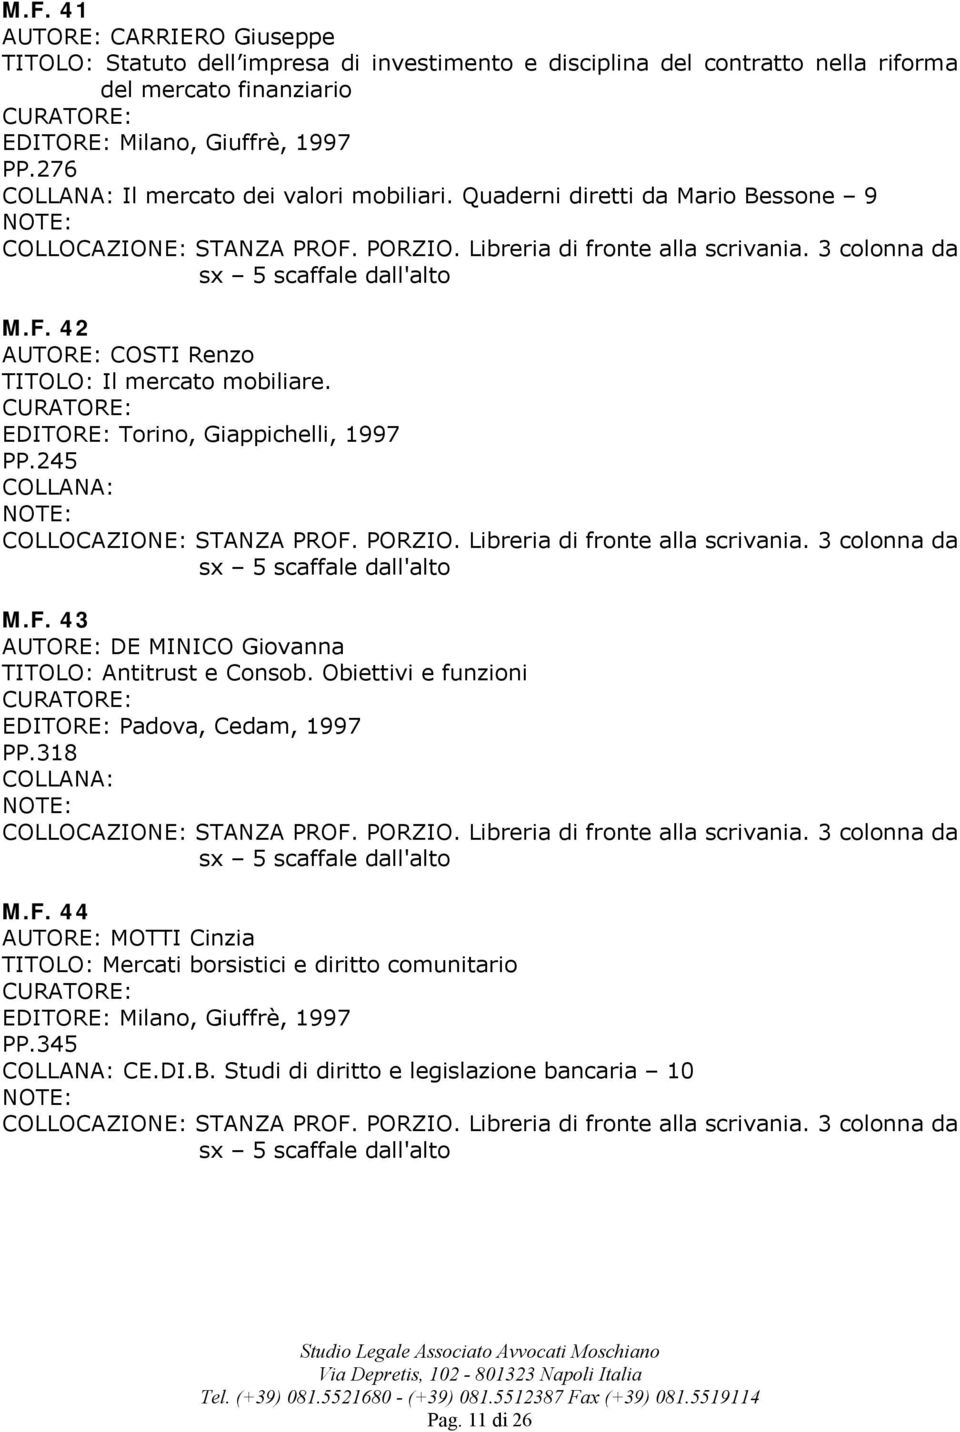 EDITORE: Torino, Giappichelli, 1997 PP.245 M.F. 43 DE MINICO Giovanna TITOLO: Antitrust e Consob. Obiettivi e funzioni EDITORE: Padova, Cedam, 1997 PP.